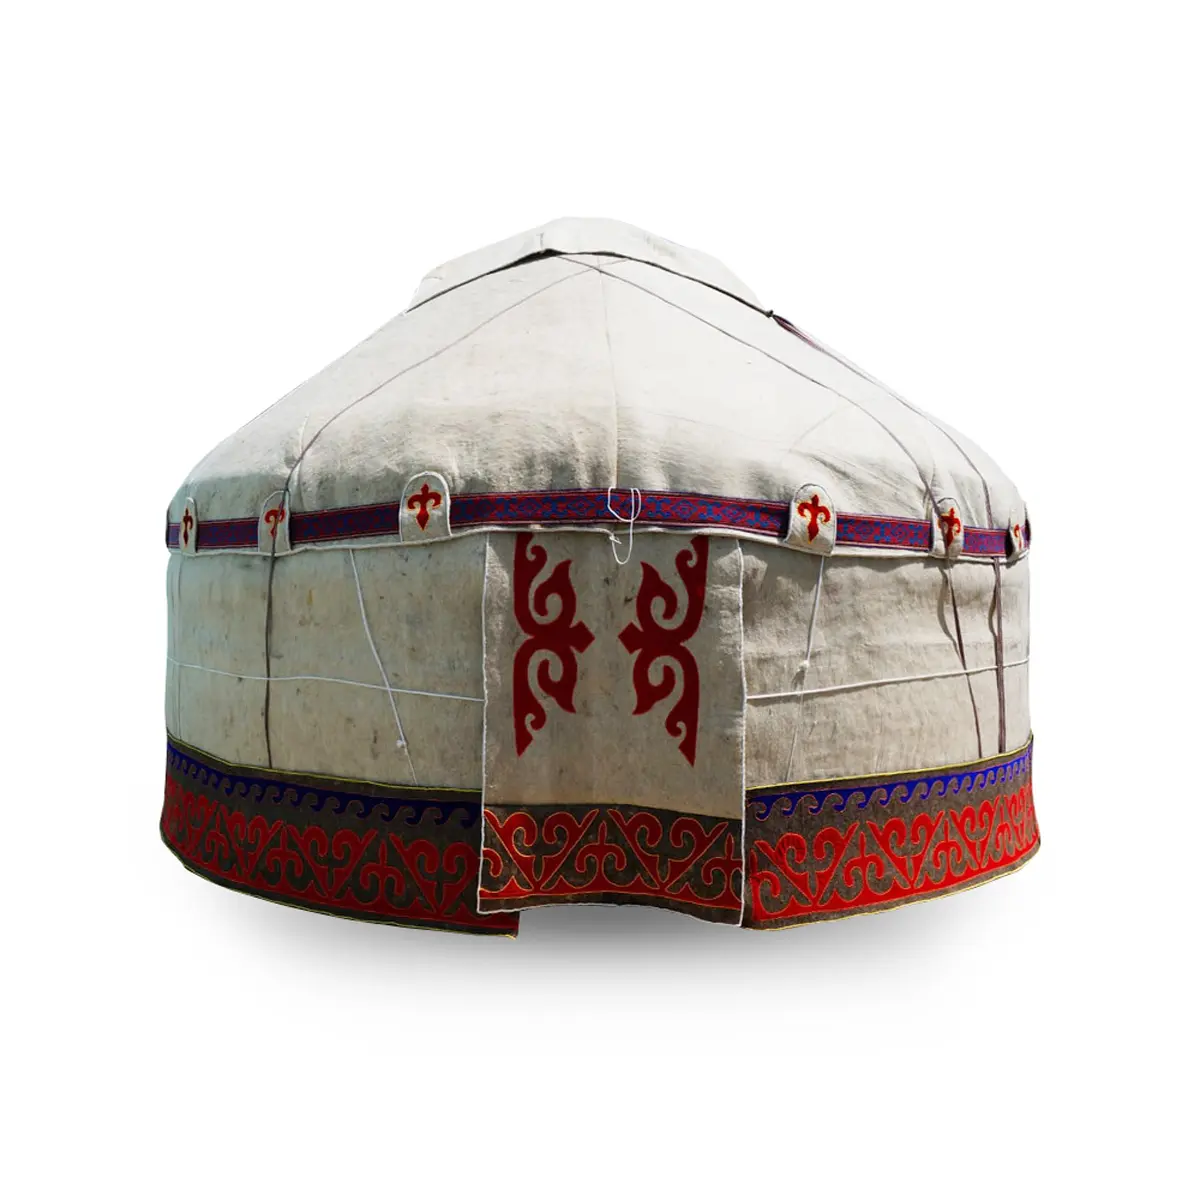 Ukuran rumah yurt tradisional Kazakhstan 4.5 meter terbuat dari bahan alami dari produsen